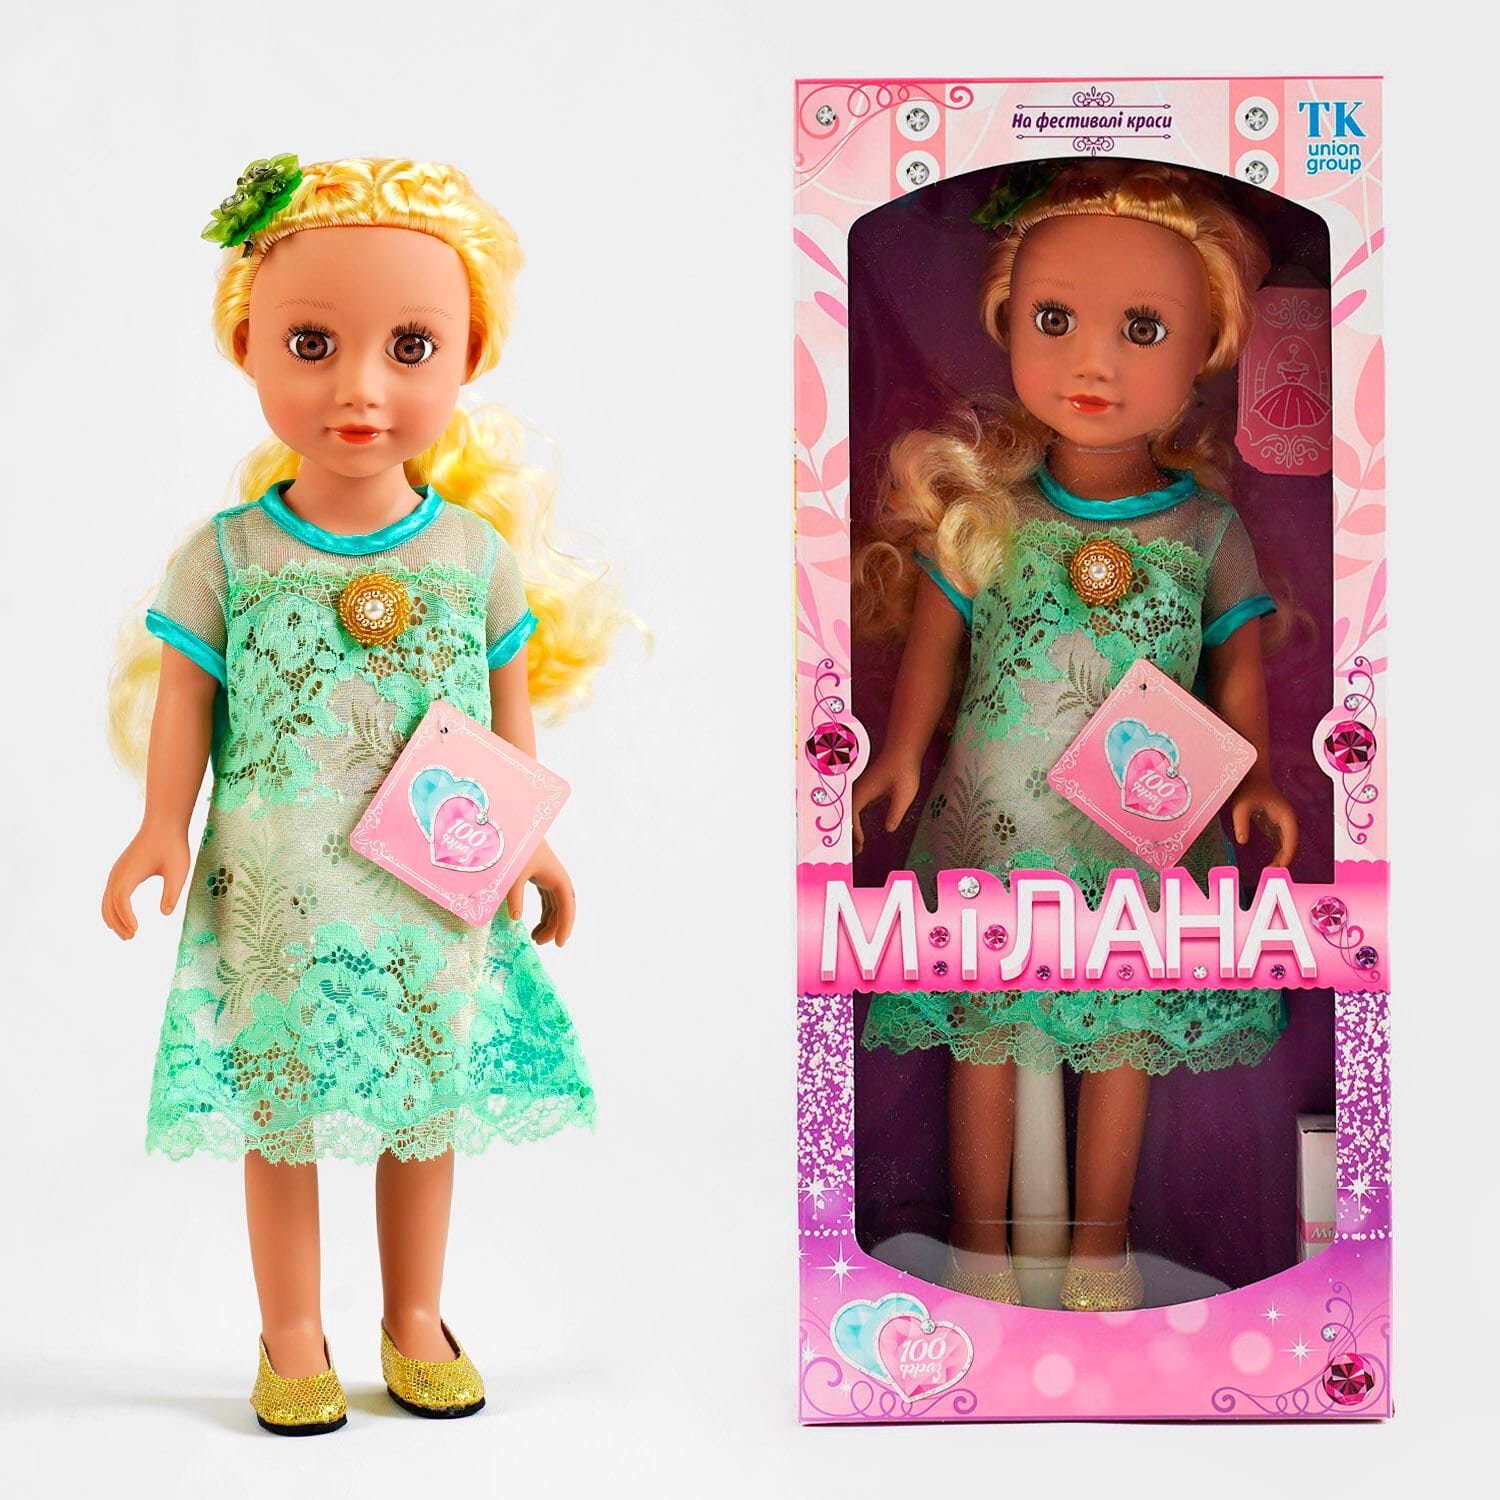 Кукла говорит 100 фраз на украинском языке (ML - 20910) высота 44 см